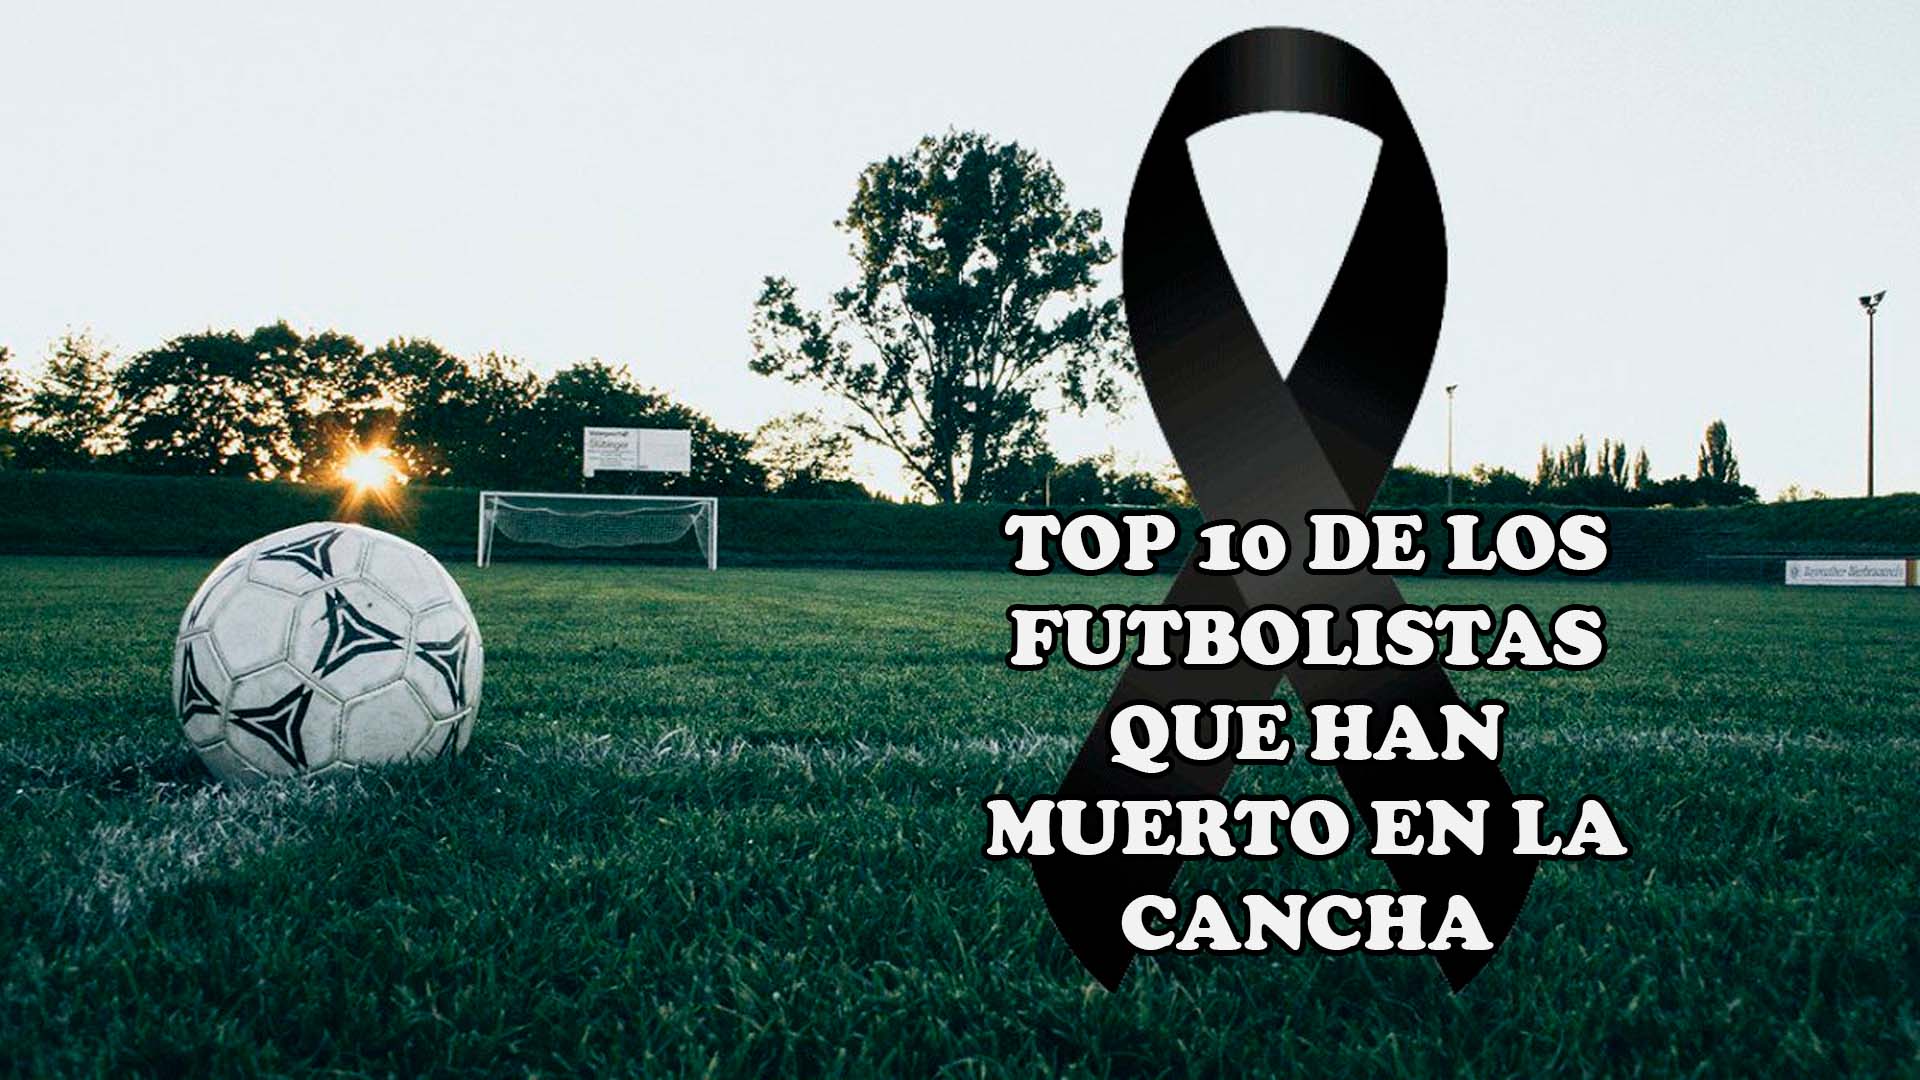 Top 10 de los futbolistas que han muerto en la cancha